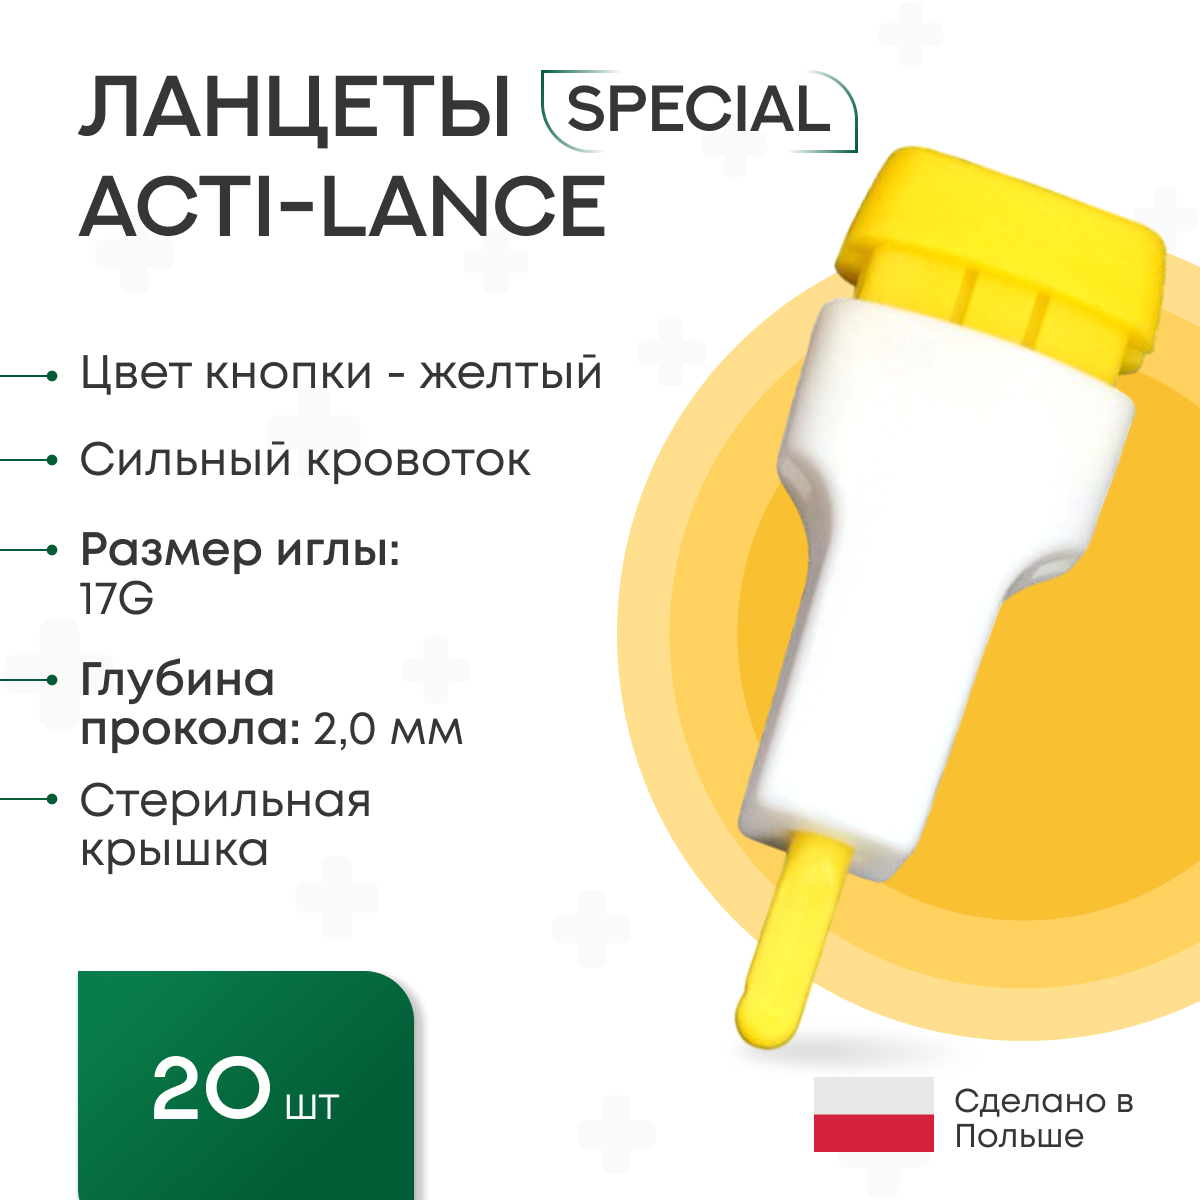 Ланцеты Acti-lance Special для капиллярного забора крови 20 шт., глубина прокола 2,0 мм, лезвие, желтые